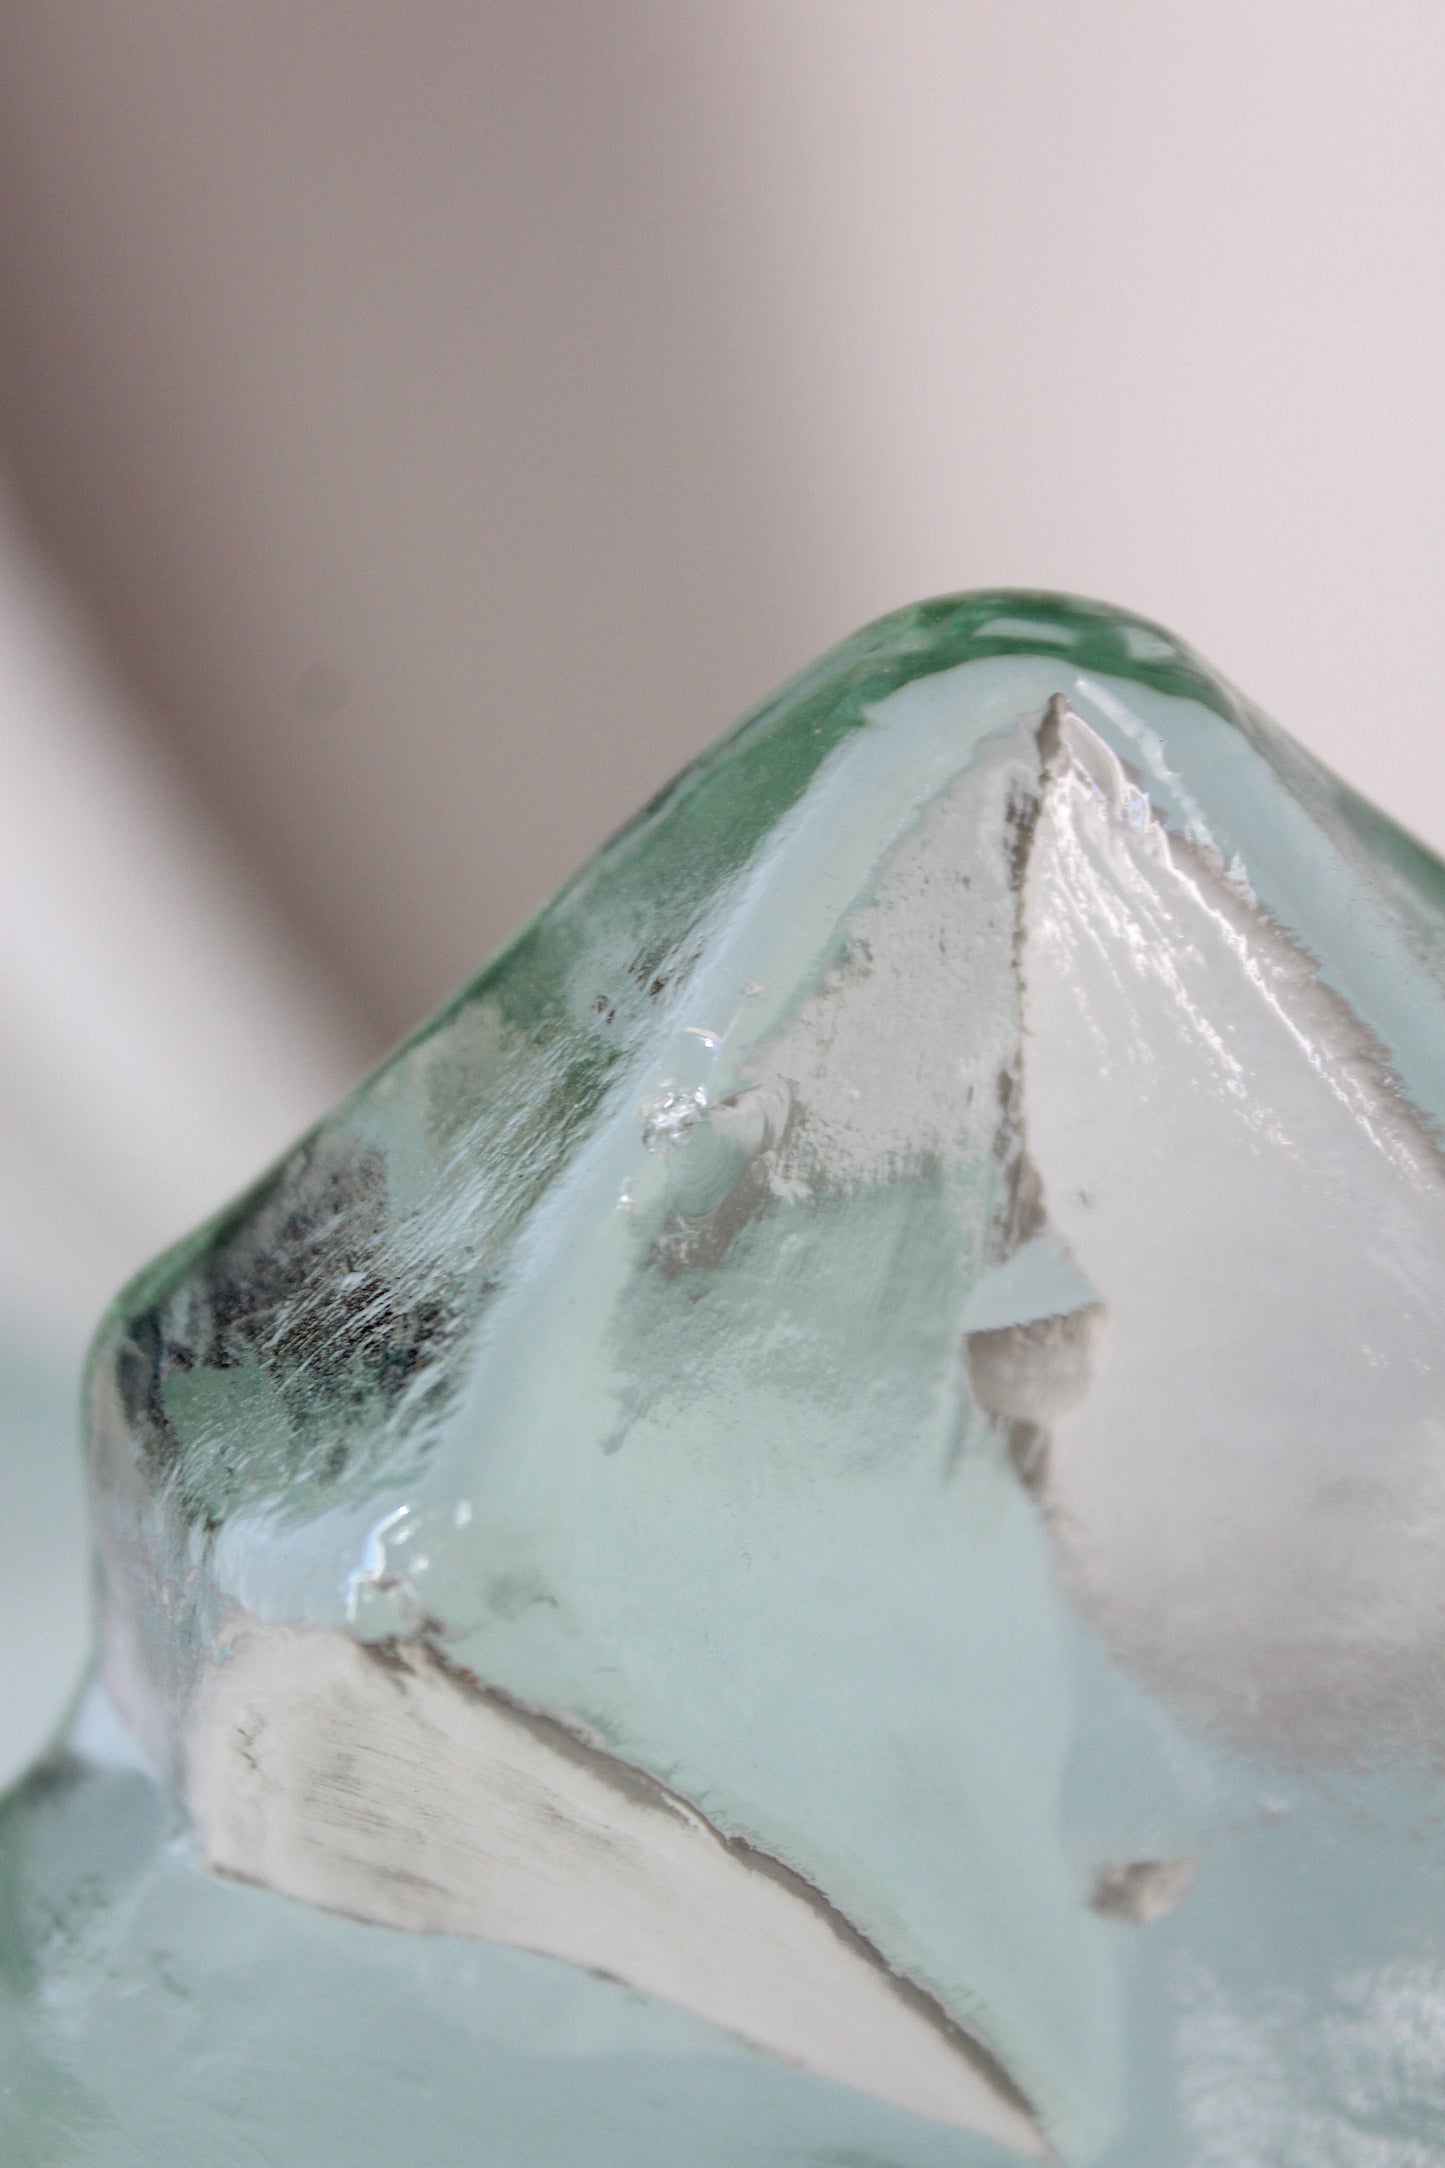 Bergdala - Vintage glass sculpture